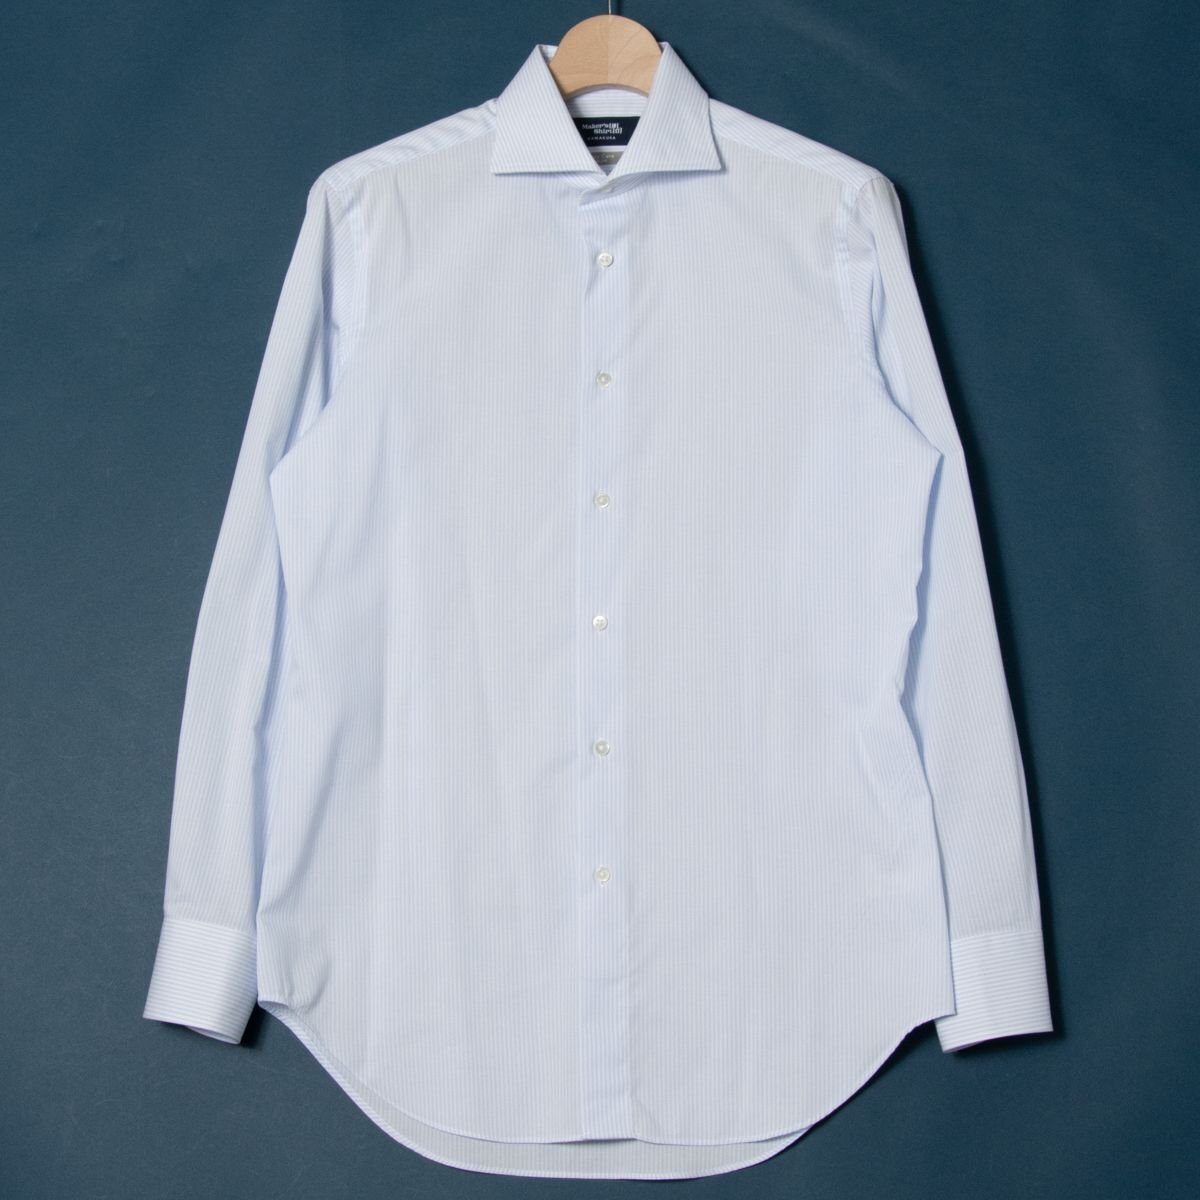 メール便◯ Maker's Shirt鎌倉 サイズ39 長袖 ワイドカラー シャツ ストライプ 白/ホワイト 水色/ライトブルー コットン混 メンズ 紳士_画像1